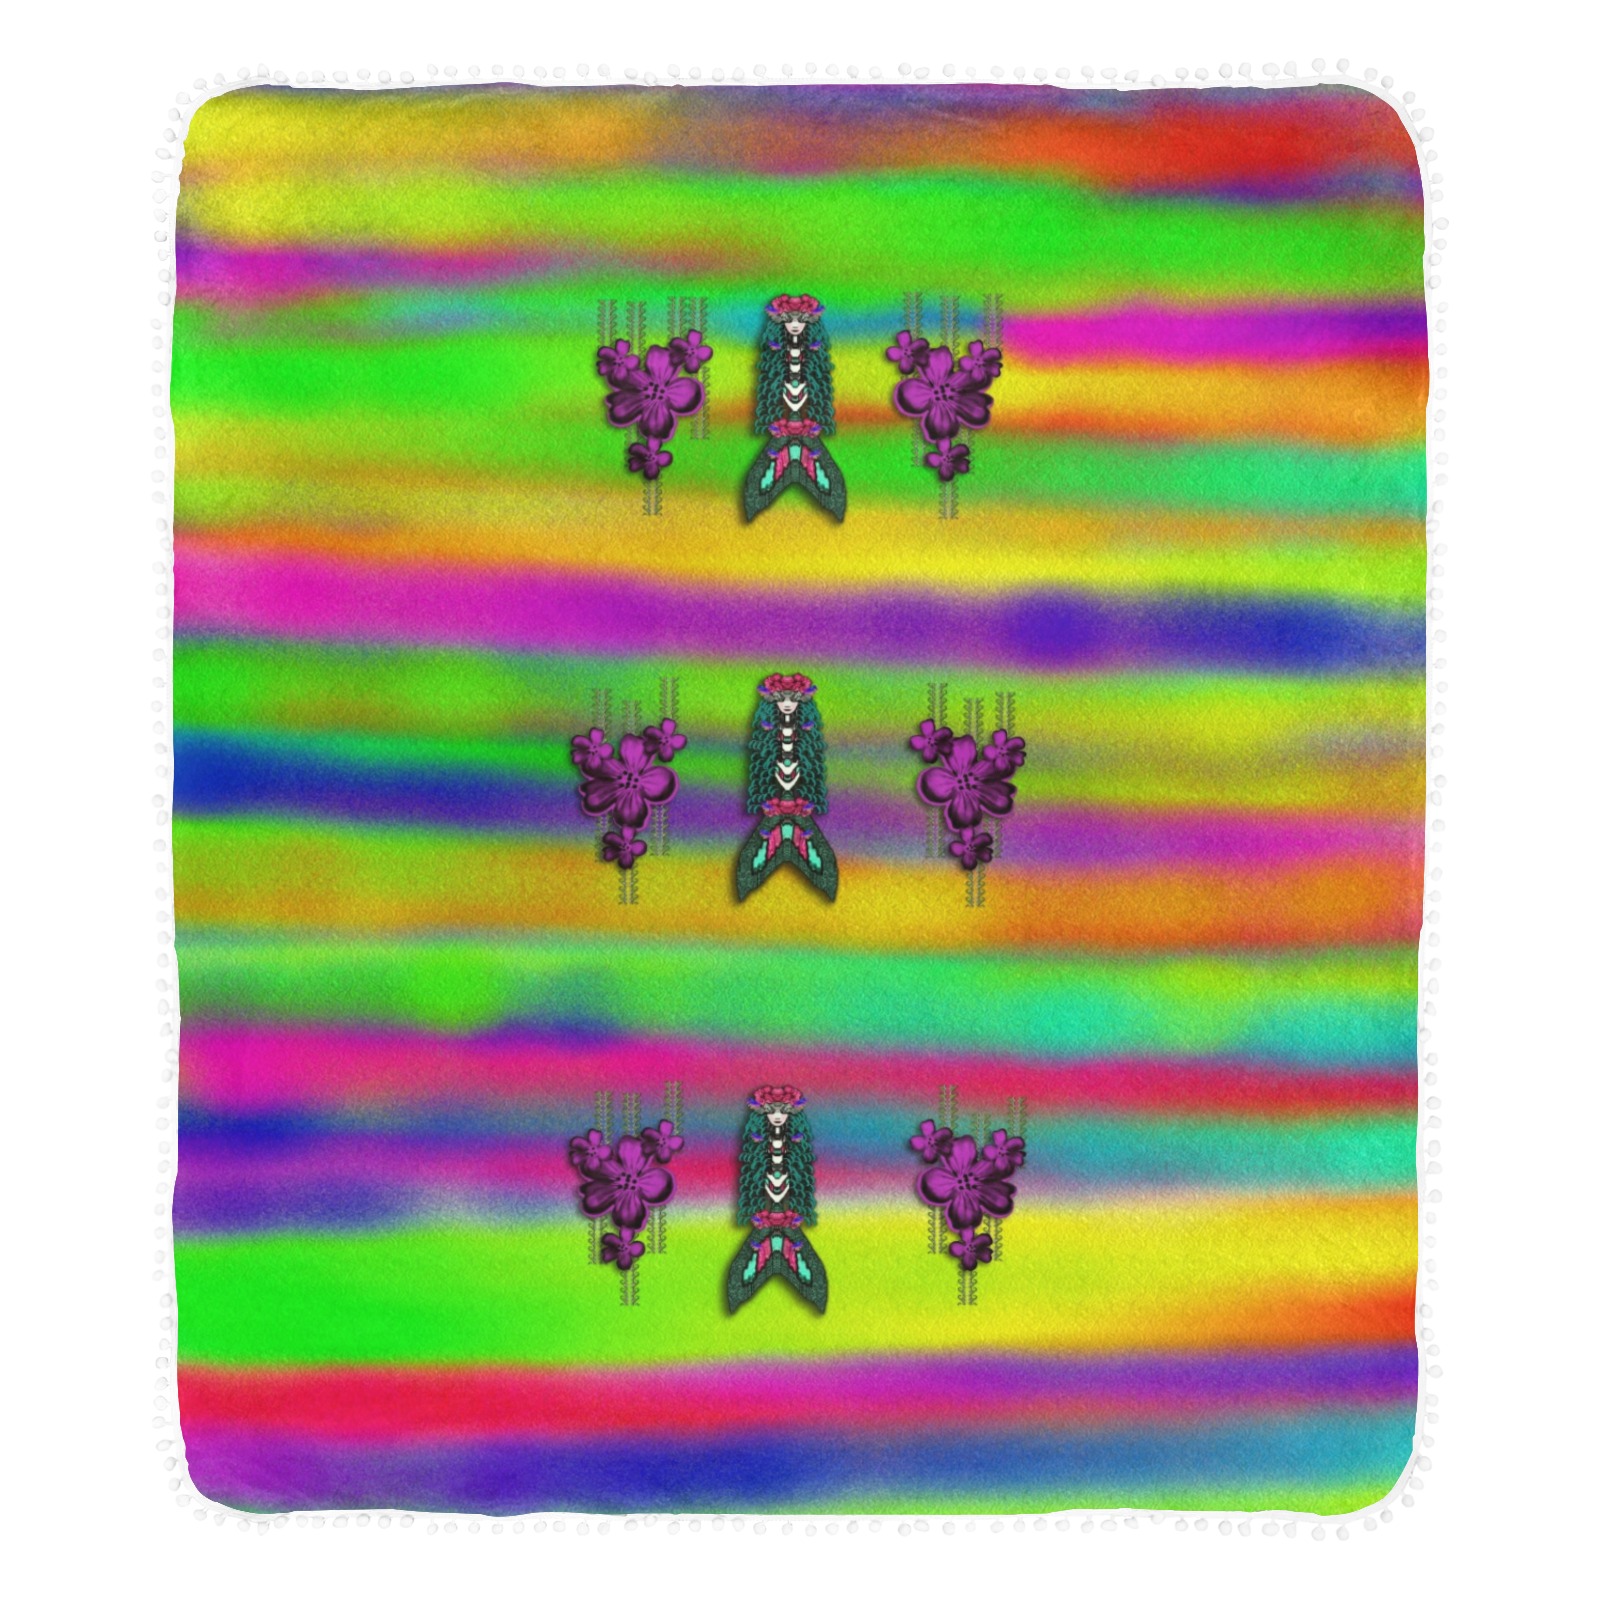 mermaids and unicorn colors for flower joy Pom Pom Fringe Blanket 60"x80"